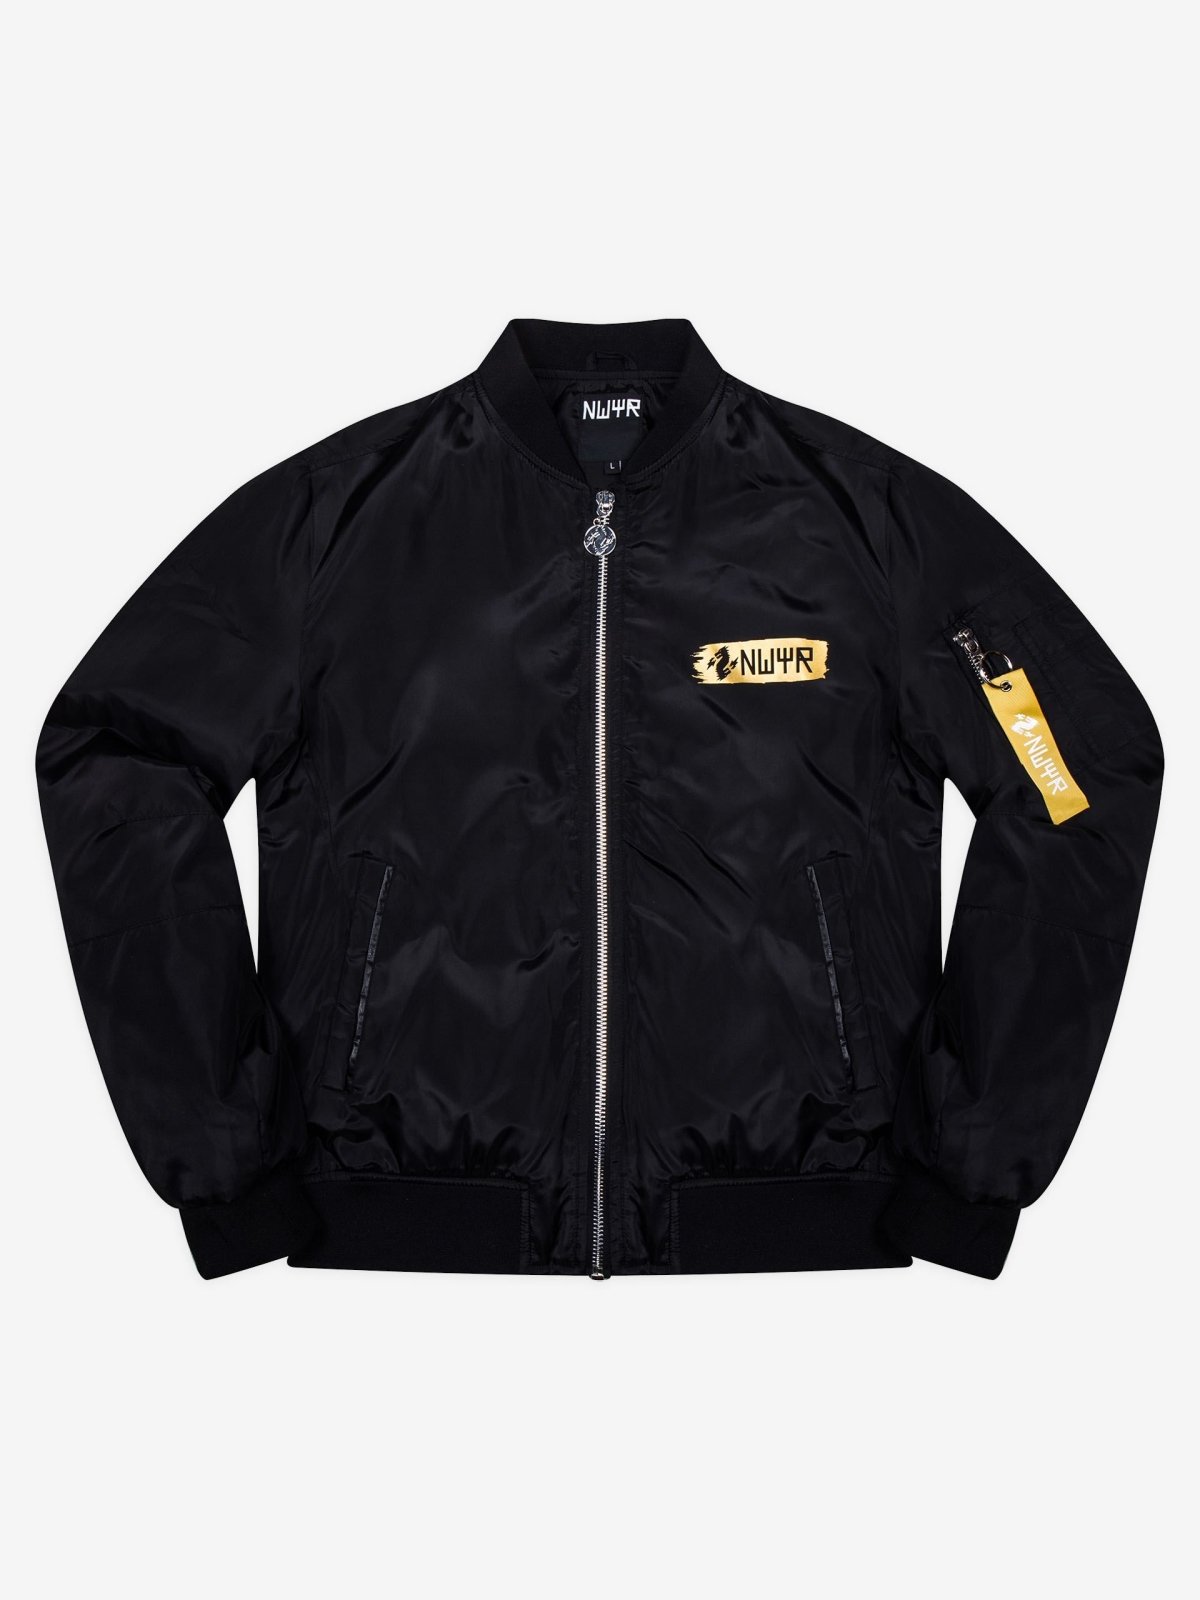 NWYR Bomber Jacket (Black & Gold) - Rave Culture Shop